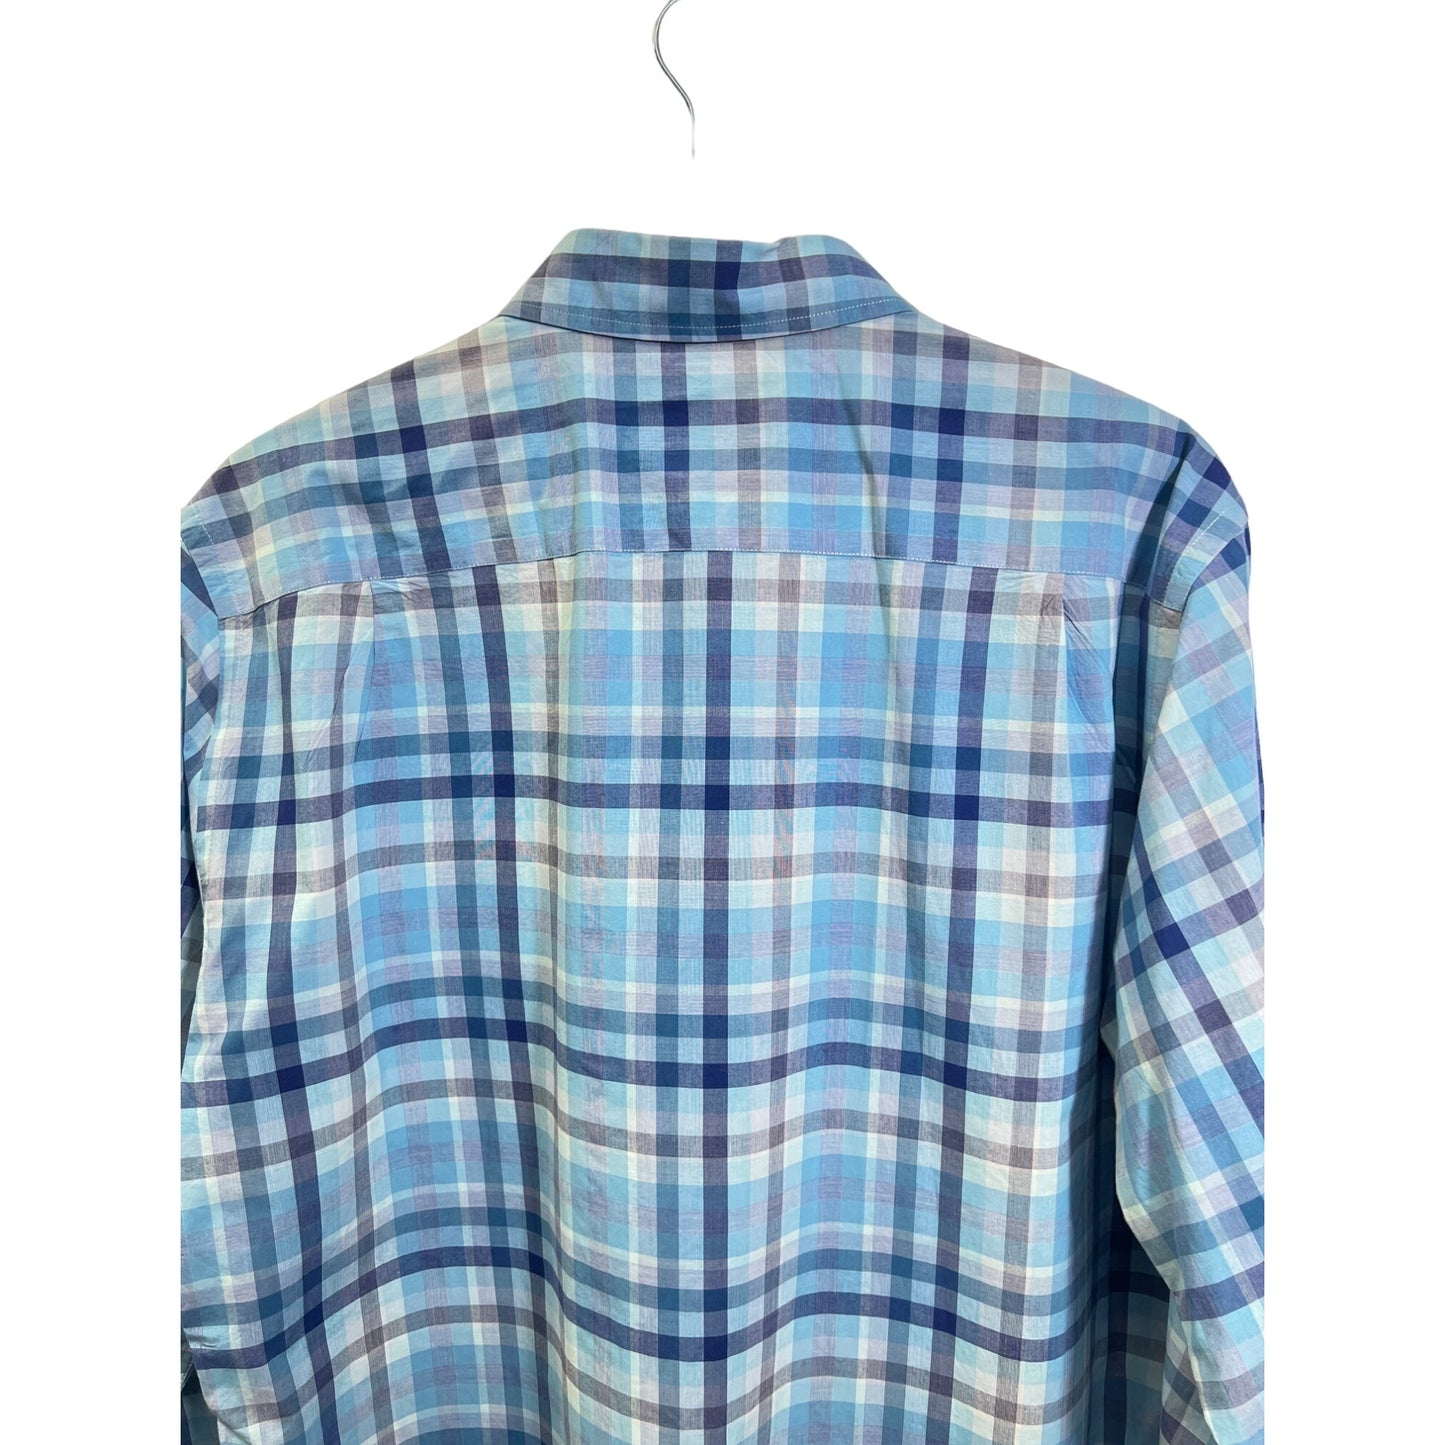 Rodd & Gunn Original FIt Blue Plaid Cotton Button Down Shirt